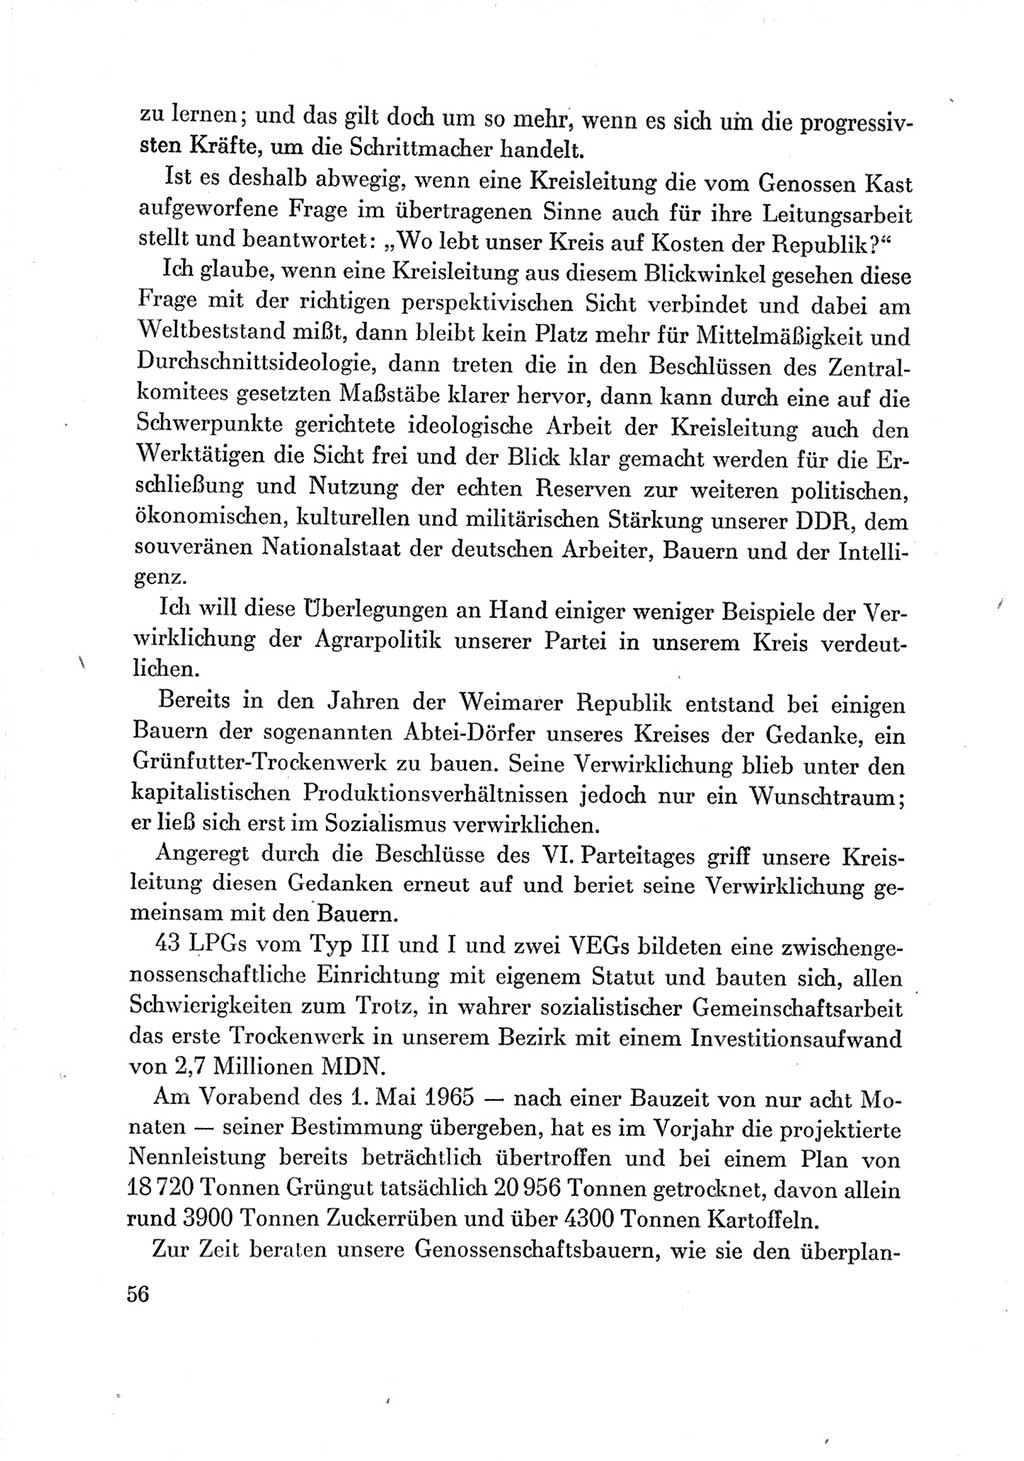 Protokoll der Verhandlungen des Ⅶ. Parteitages der Sozialistischen Einheitspartei Deutschlands (SED) [Deutsche Demokratische Republik (DDR)] 1967, Band Ⅲ, Seite 56 (Prot. Verh. Ⅶ. PT SED DDR 1967, Bd. Ⅲ, S. 56)